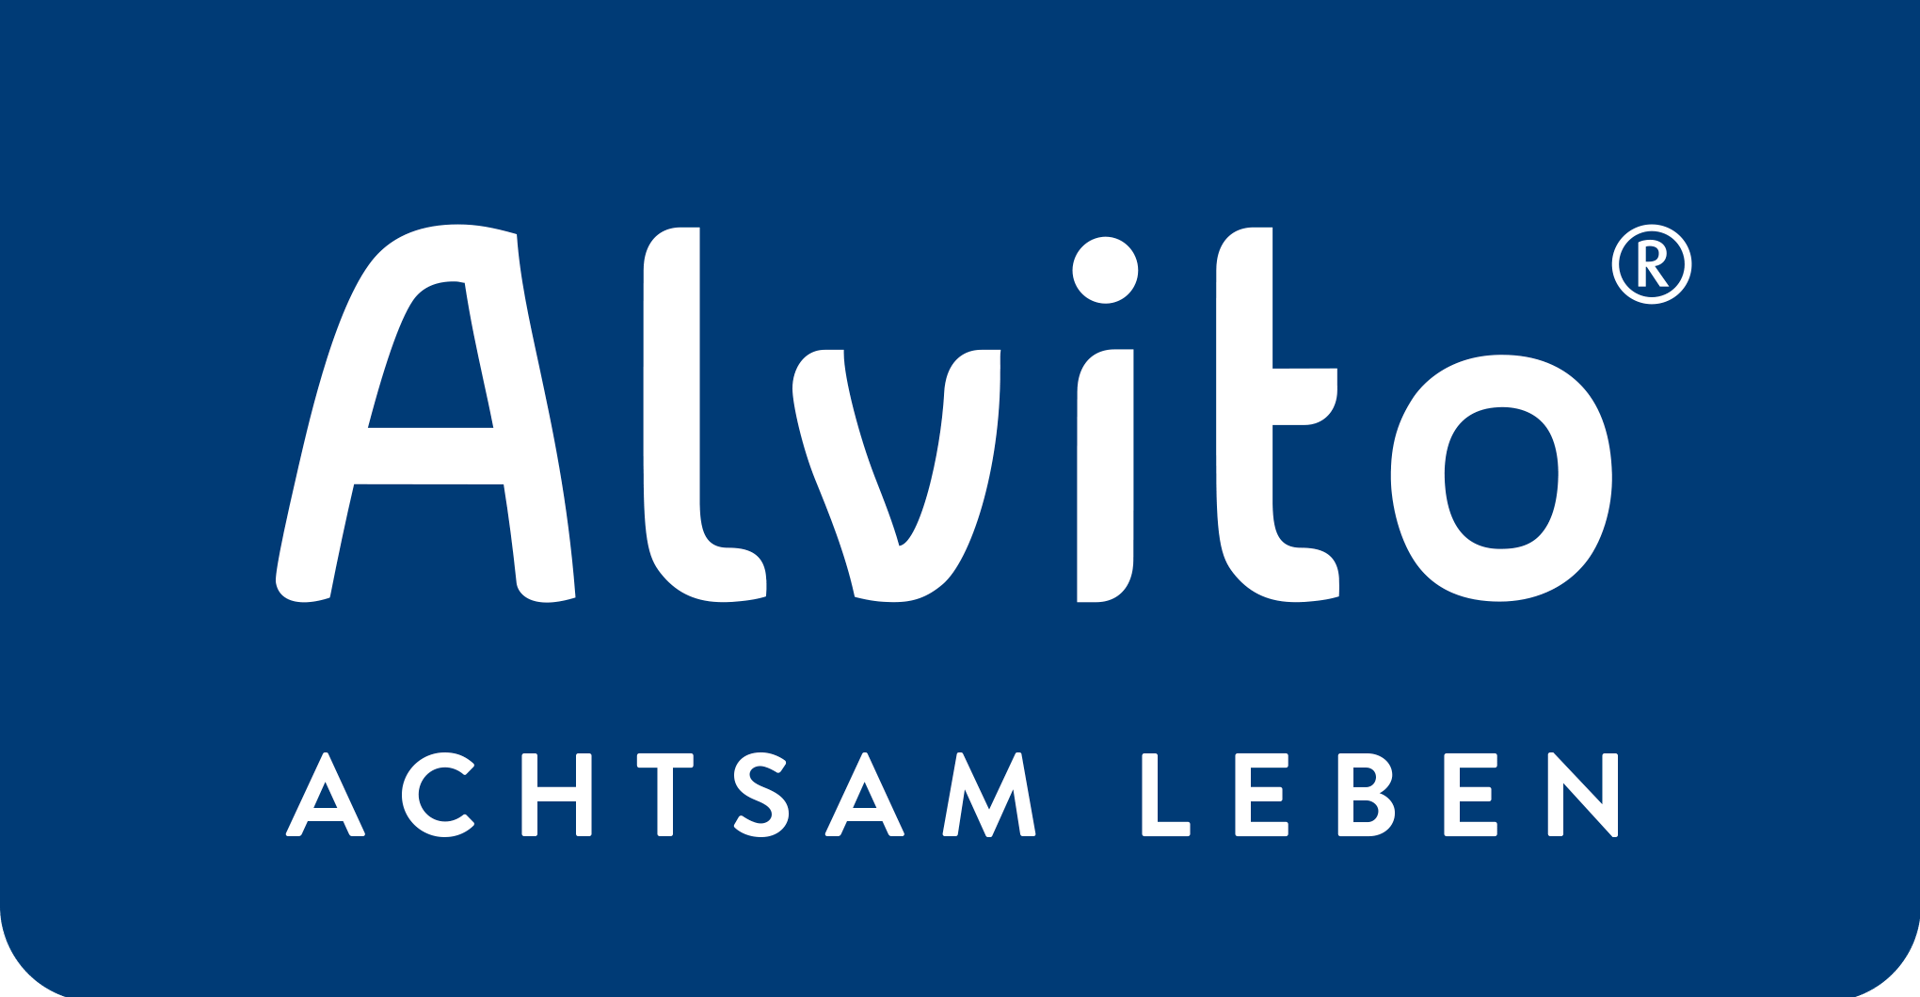 ALVITO - ACHTSAM LEBEN